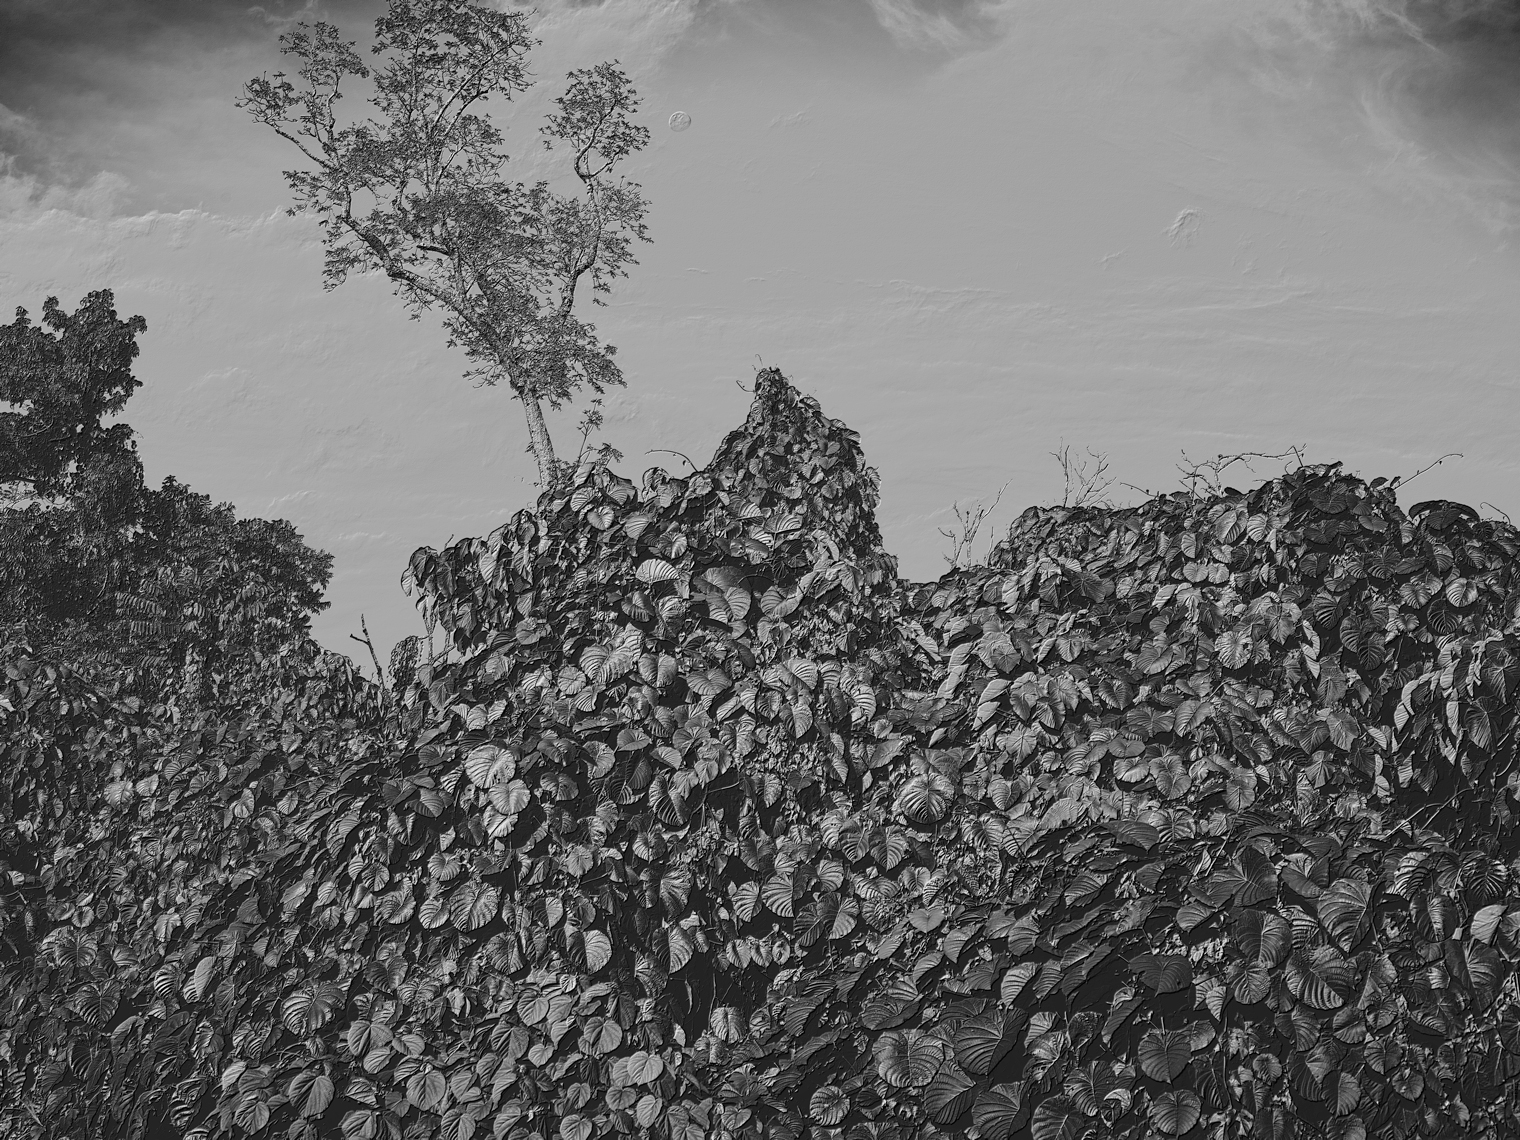 Jon Wyatt Photography - A tsunami of vegetation - invasive vines in samoa